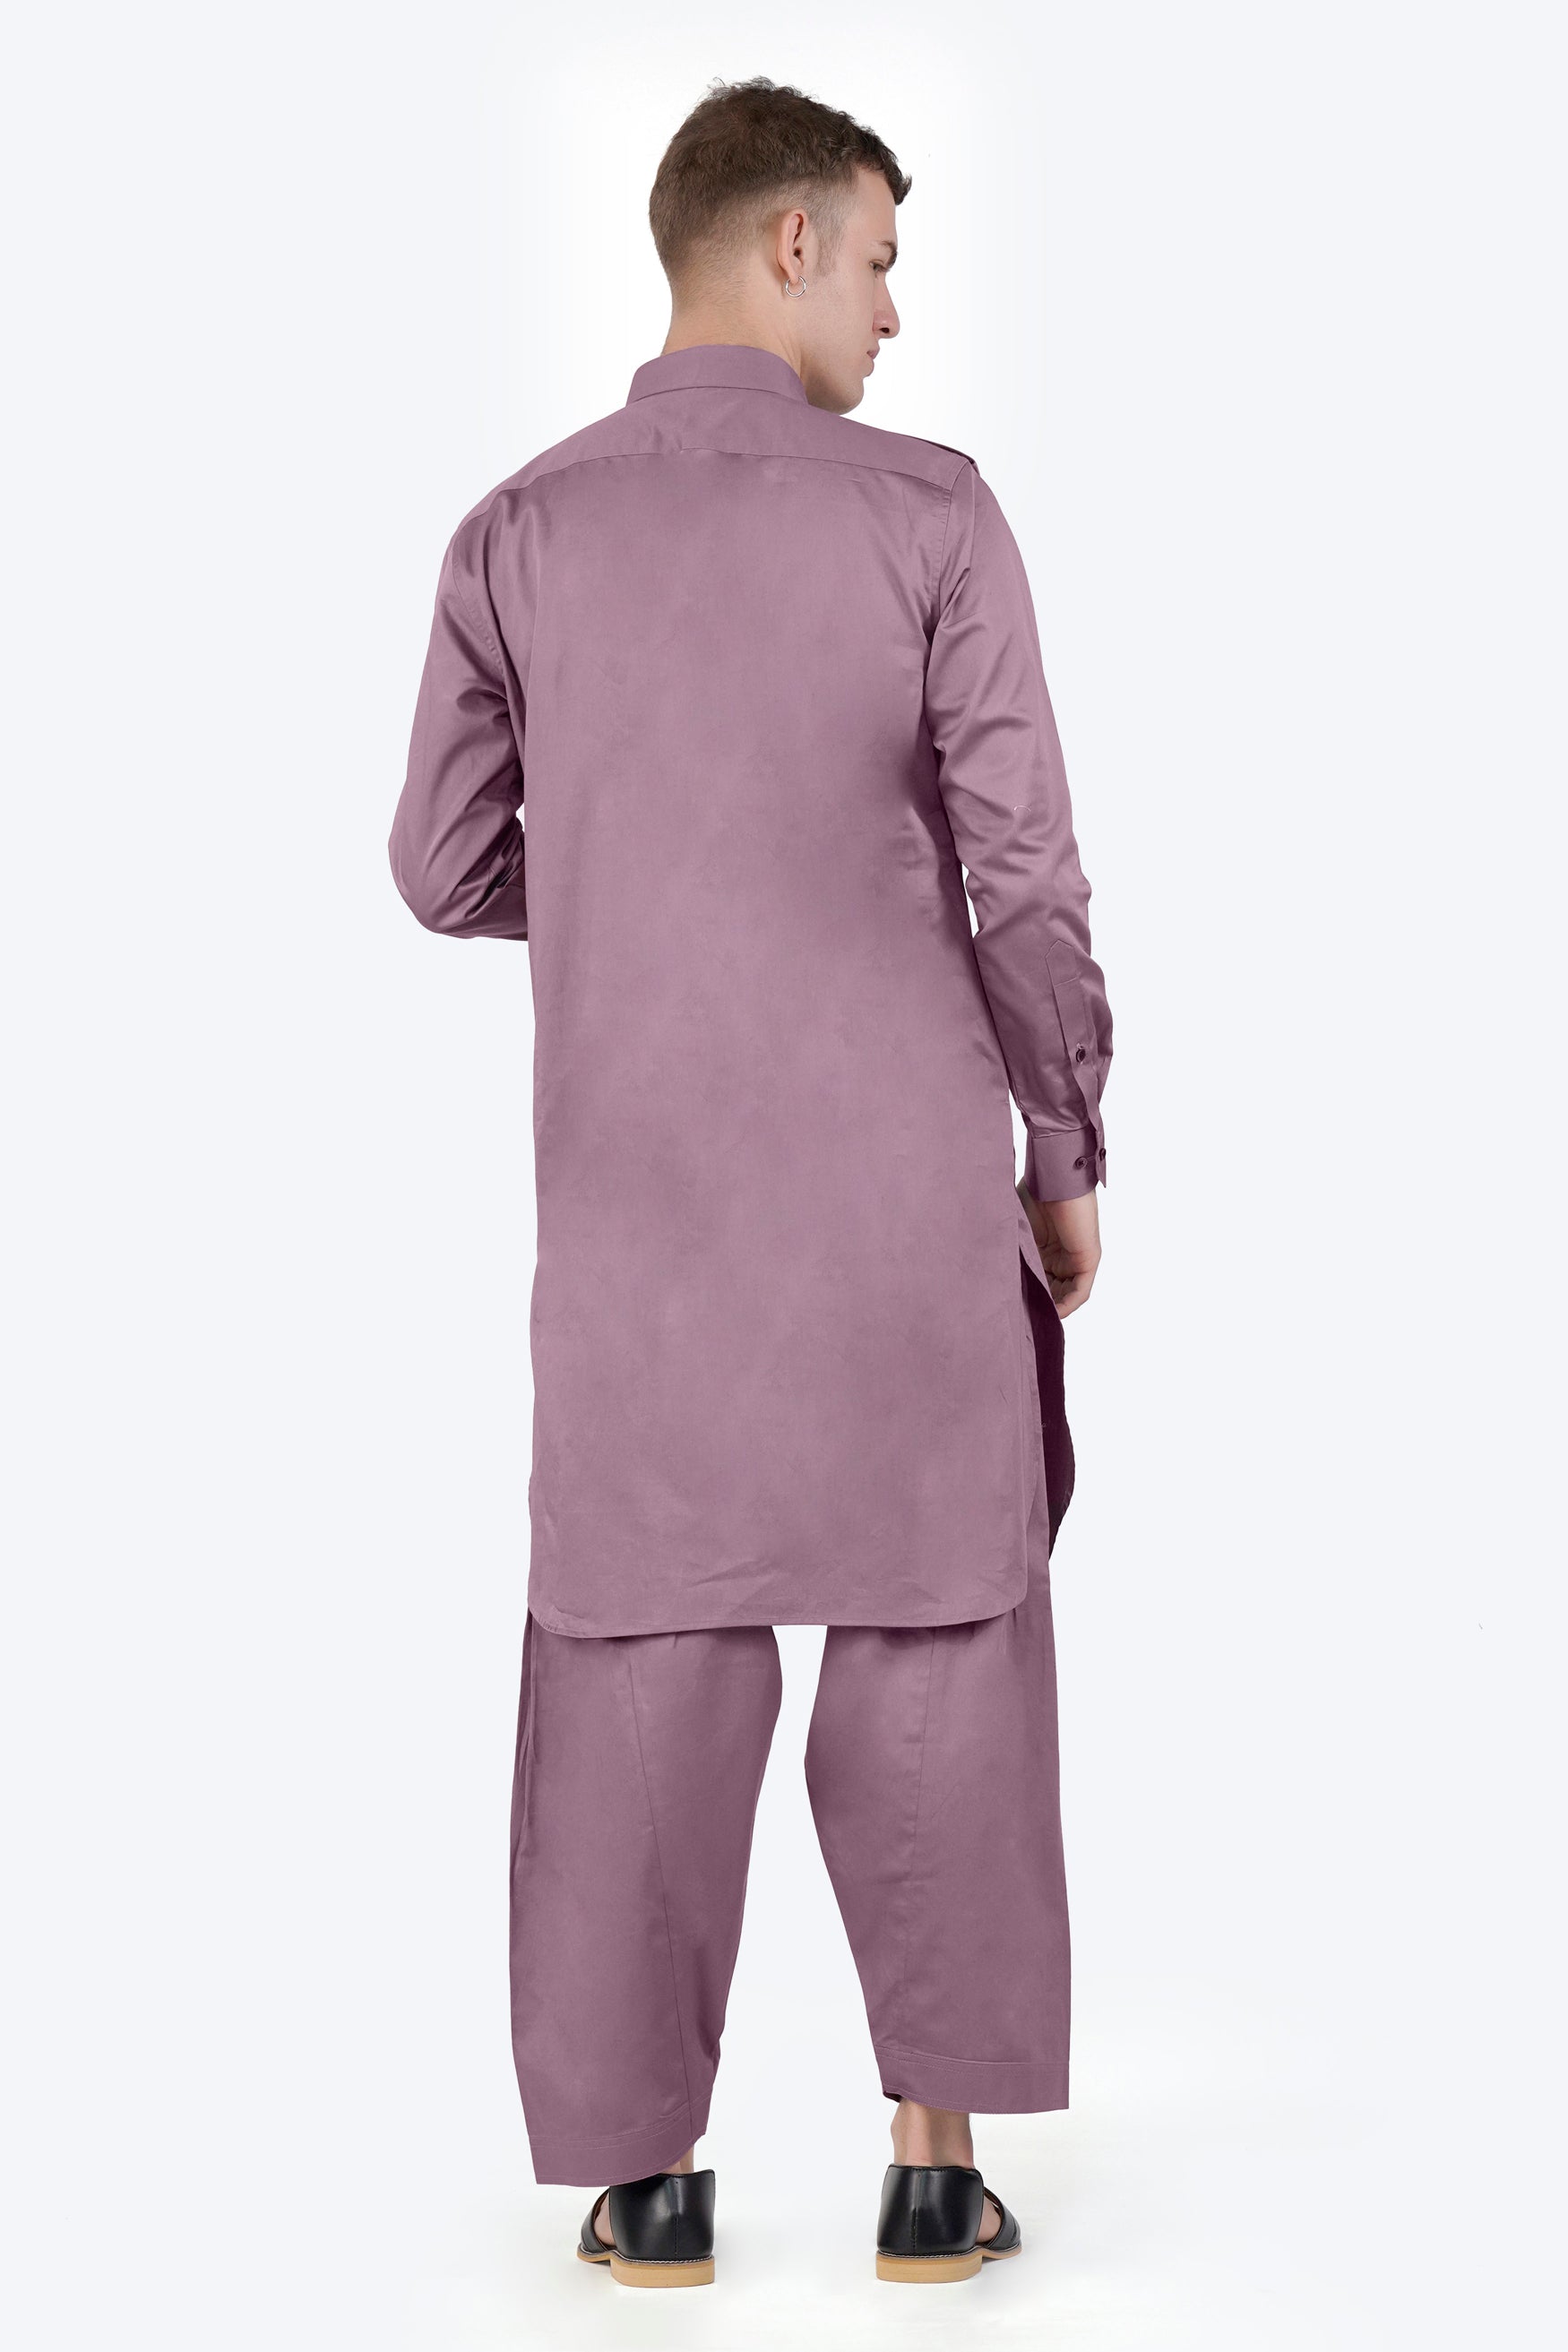 Light Mauave Purple Subtle Sheen Super Soft Premium Cotton Pathani